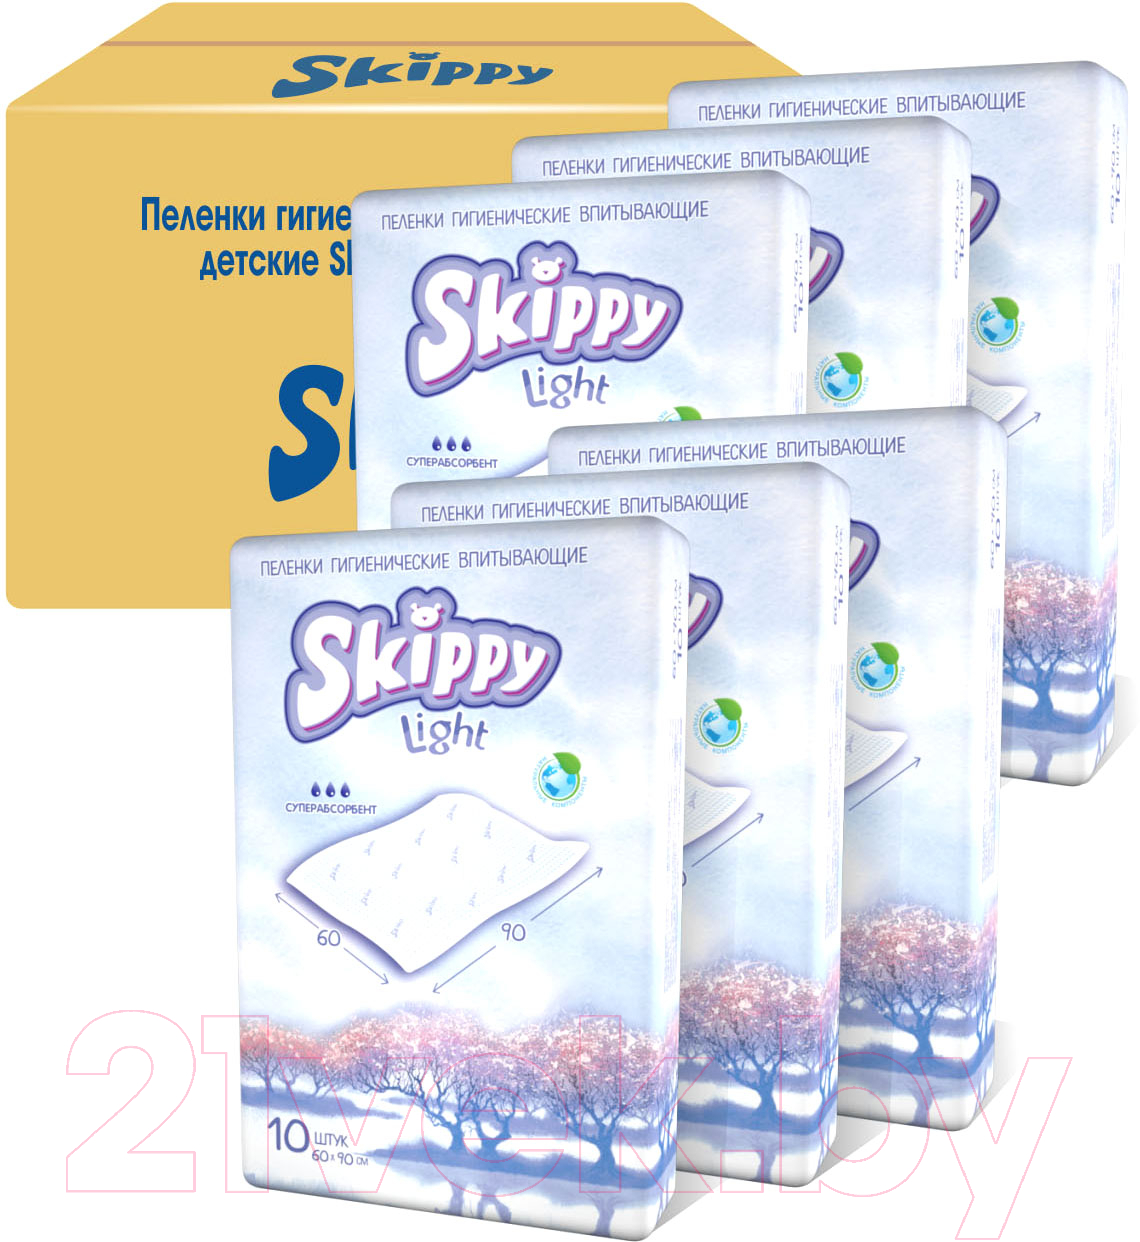 Набор пеленок одноразовых детских Skippy Light с суперабсорбентом 90x60 (60шт)